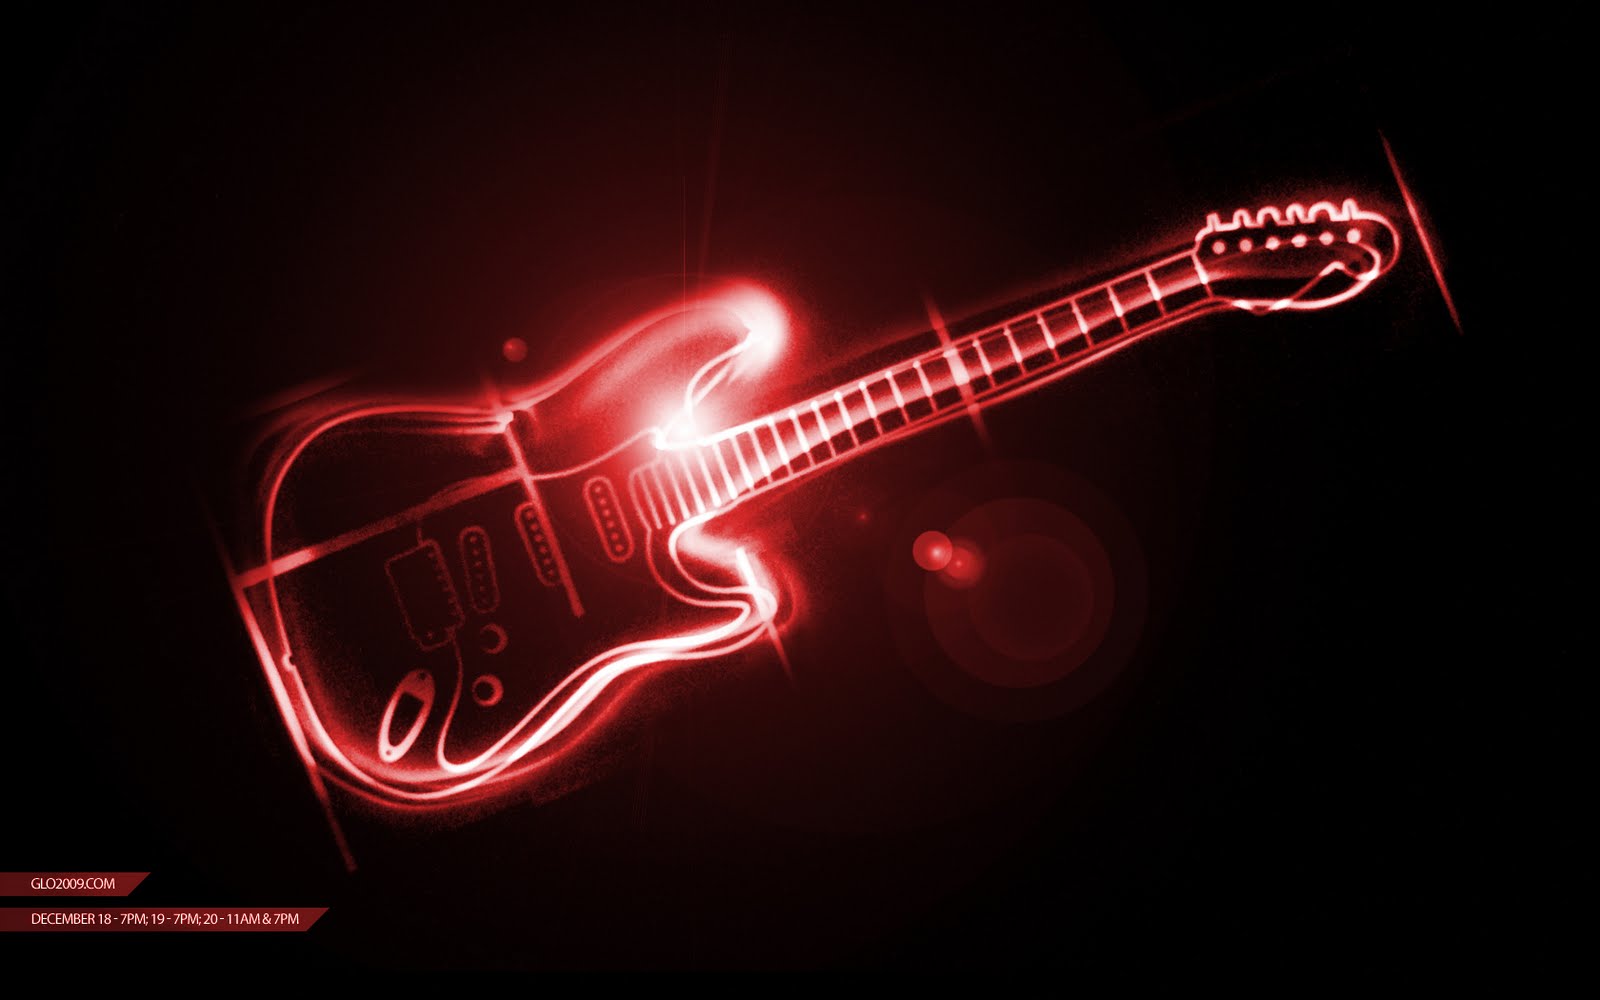 fond d'écran guitarra,guitare,guitare électrique,instrument de musique,instruments à cordes pincées,rouge